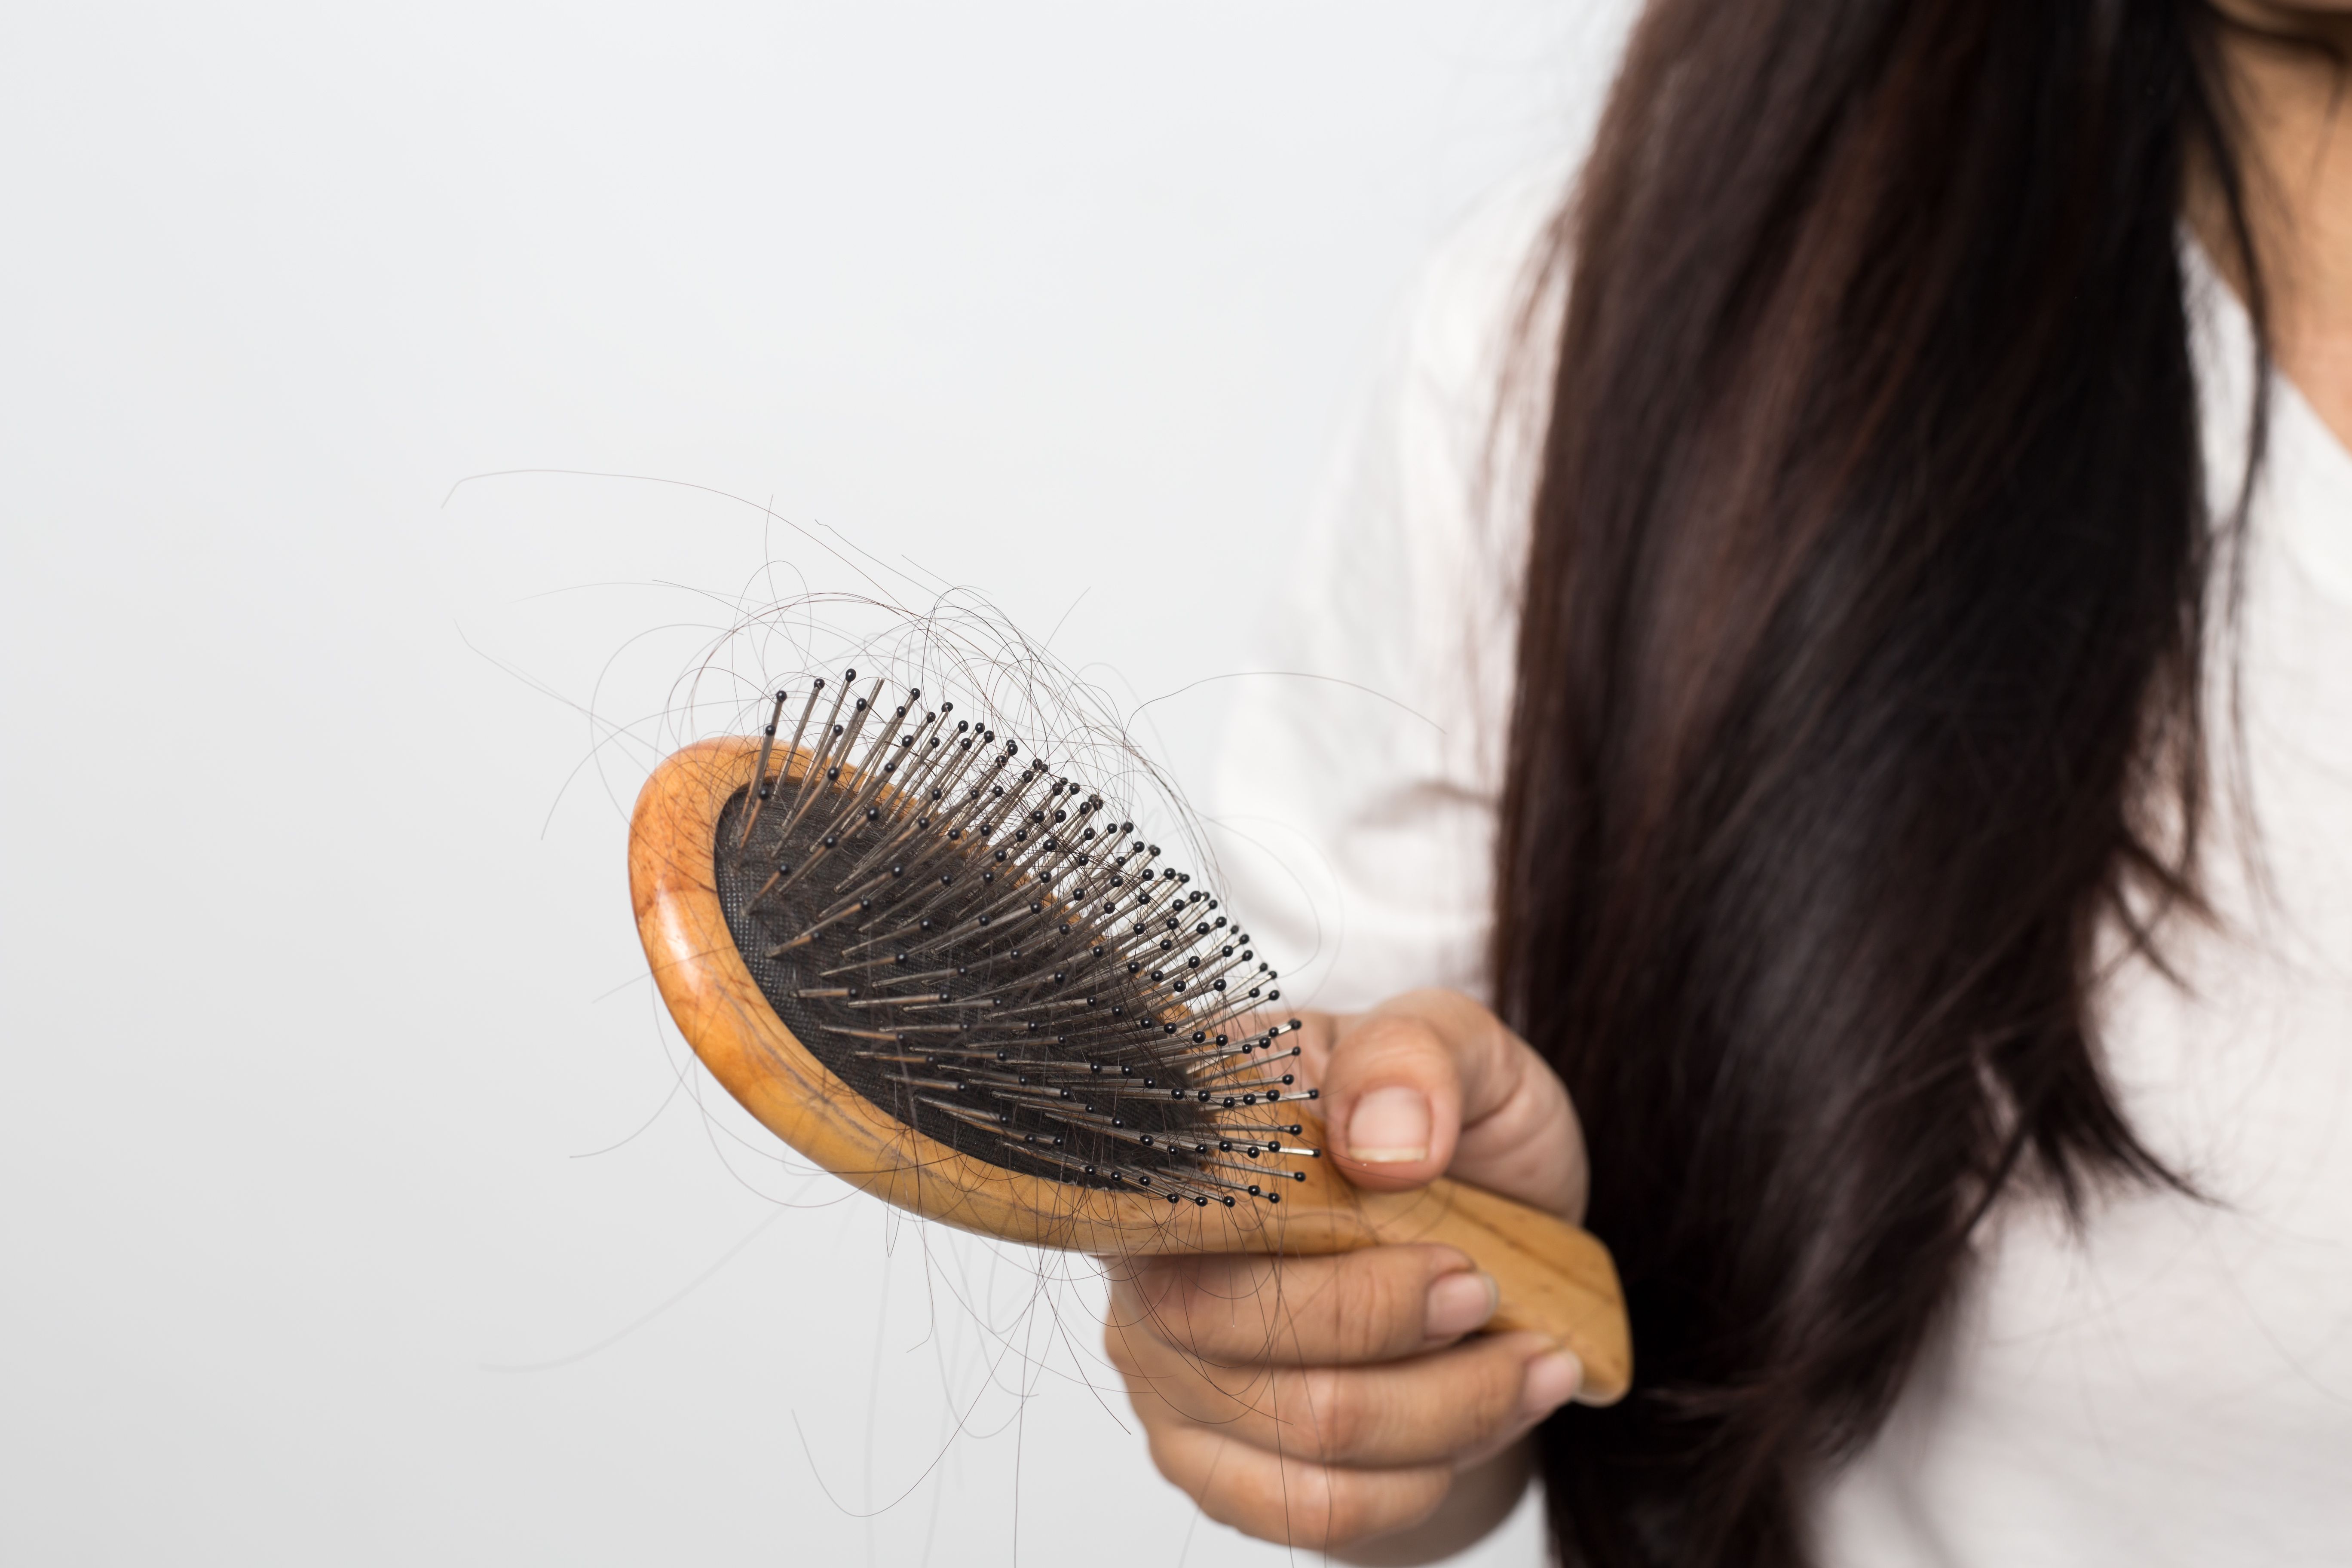 Как остановить выпадение волос после